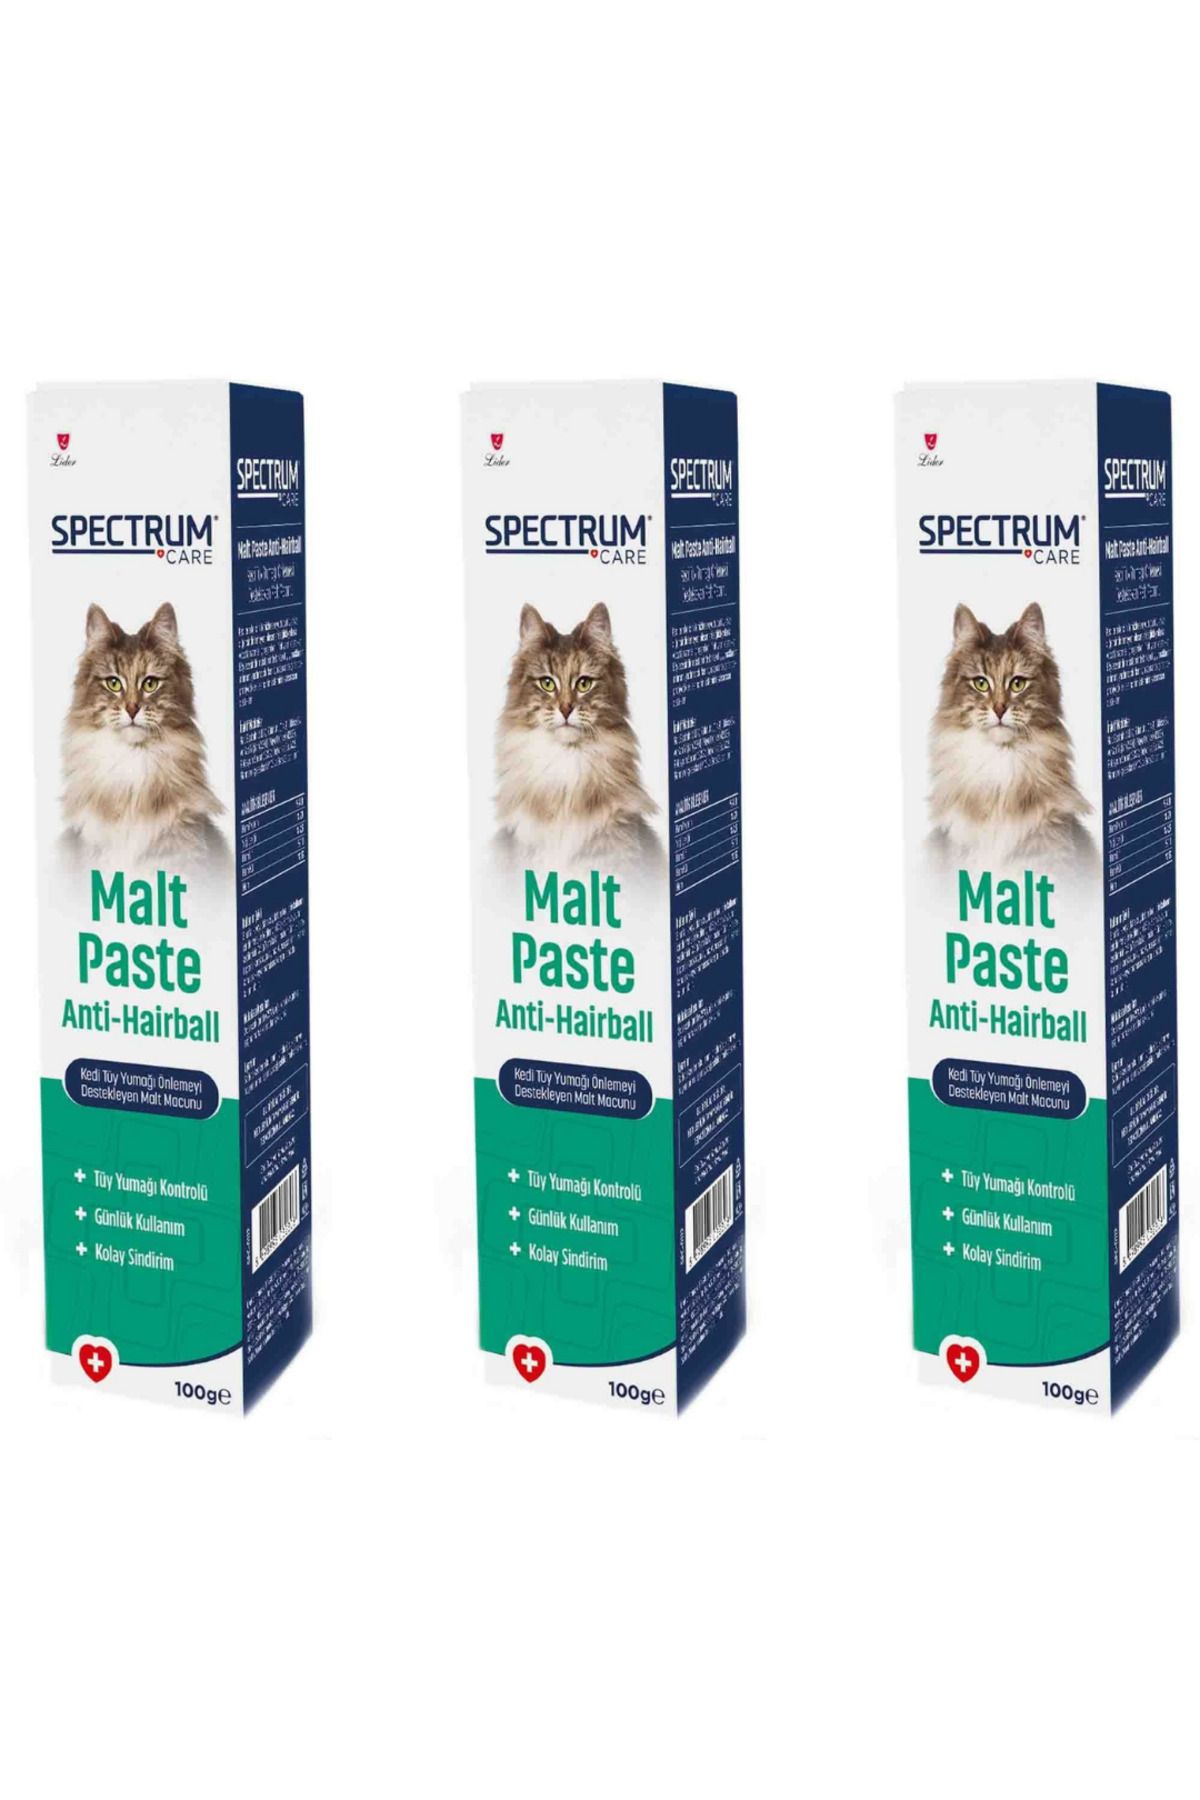 Spectrum Care Anti-Hairball Kedi Tüy Yumağı Önlemeyi Destekleyen Malt Macunu 100gr - 3 Adet